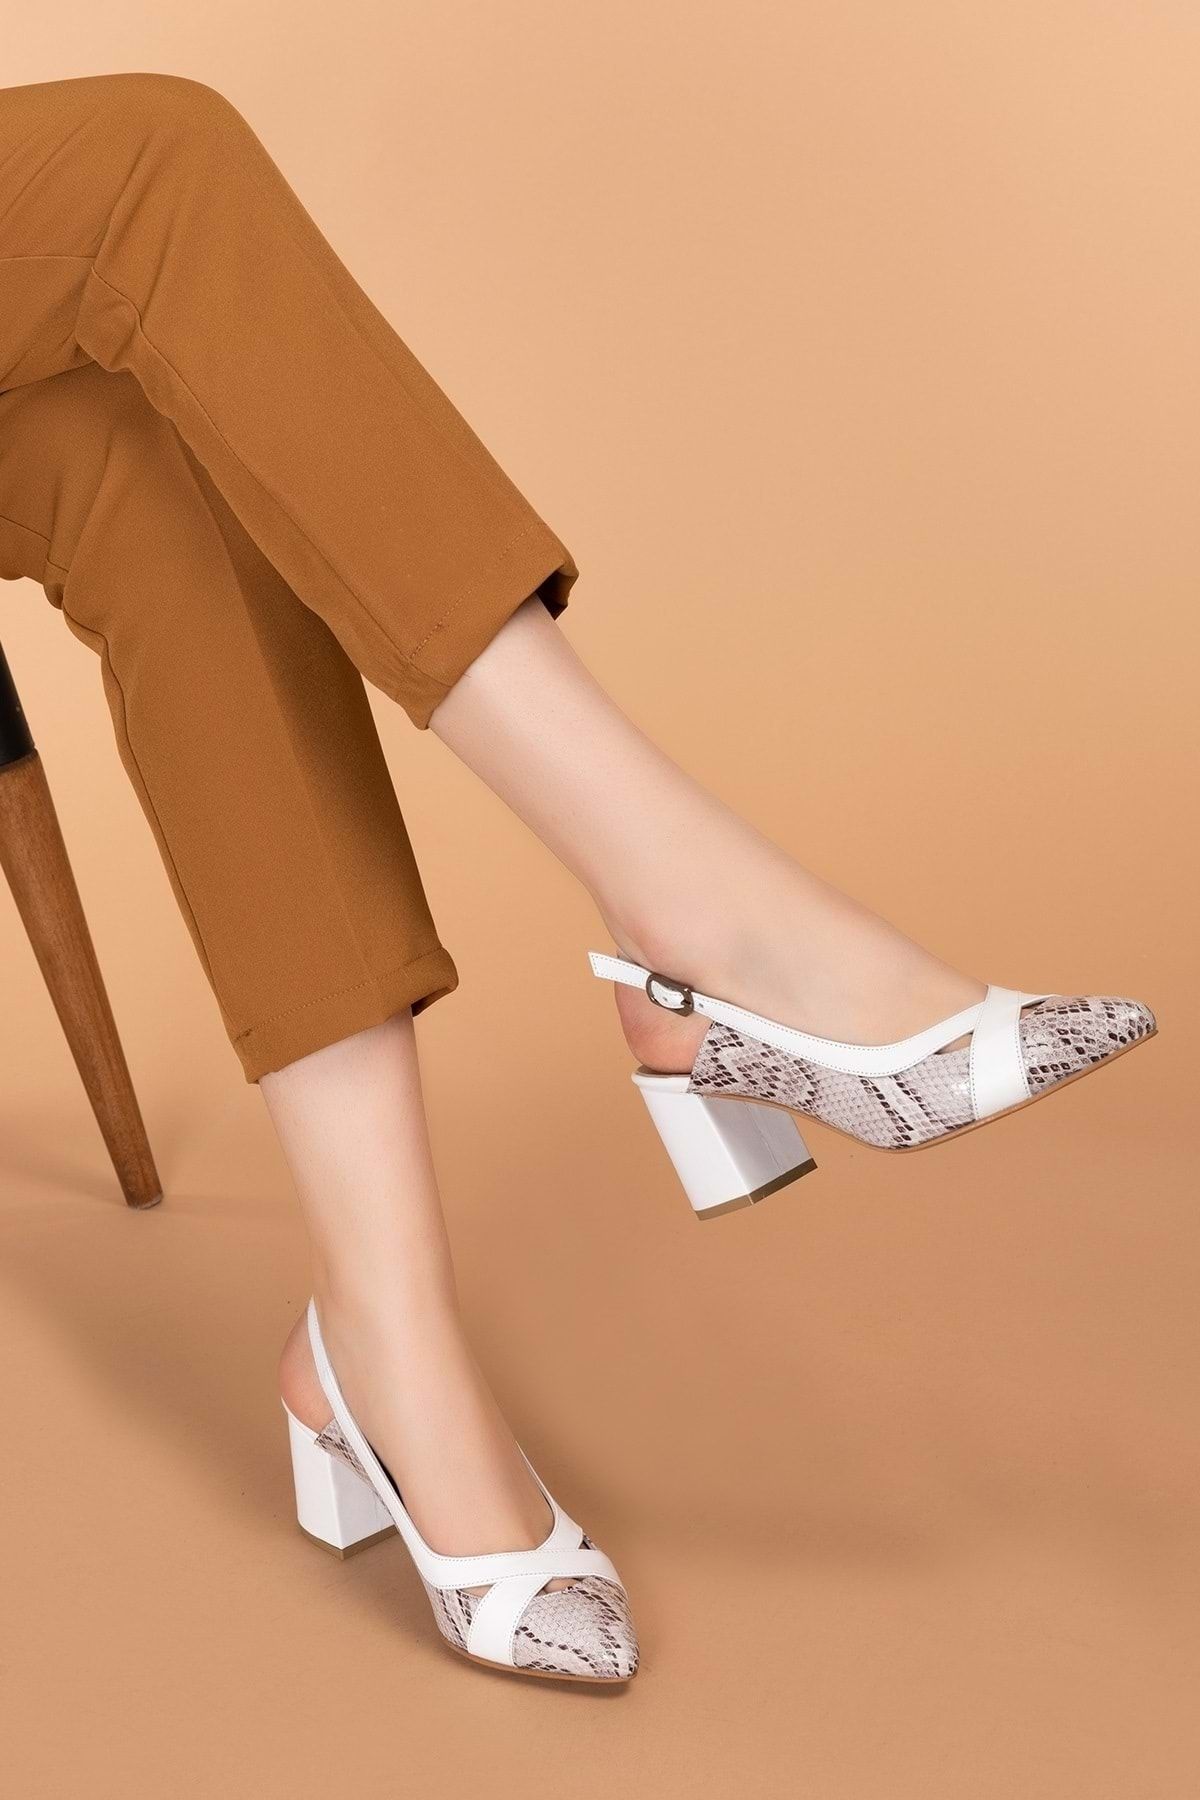 Gondol Hakiki Deri Yılan Desen Ayrıntılı Topuklu Ayakkabı Şhn.0738 Beyaz Yılan